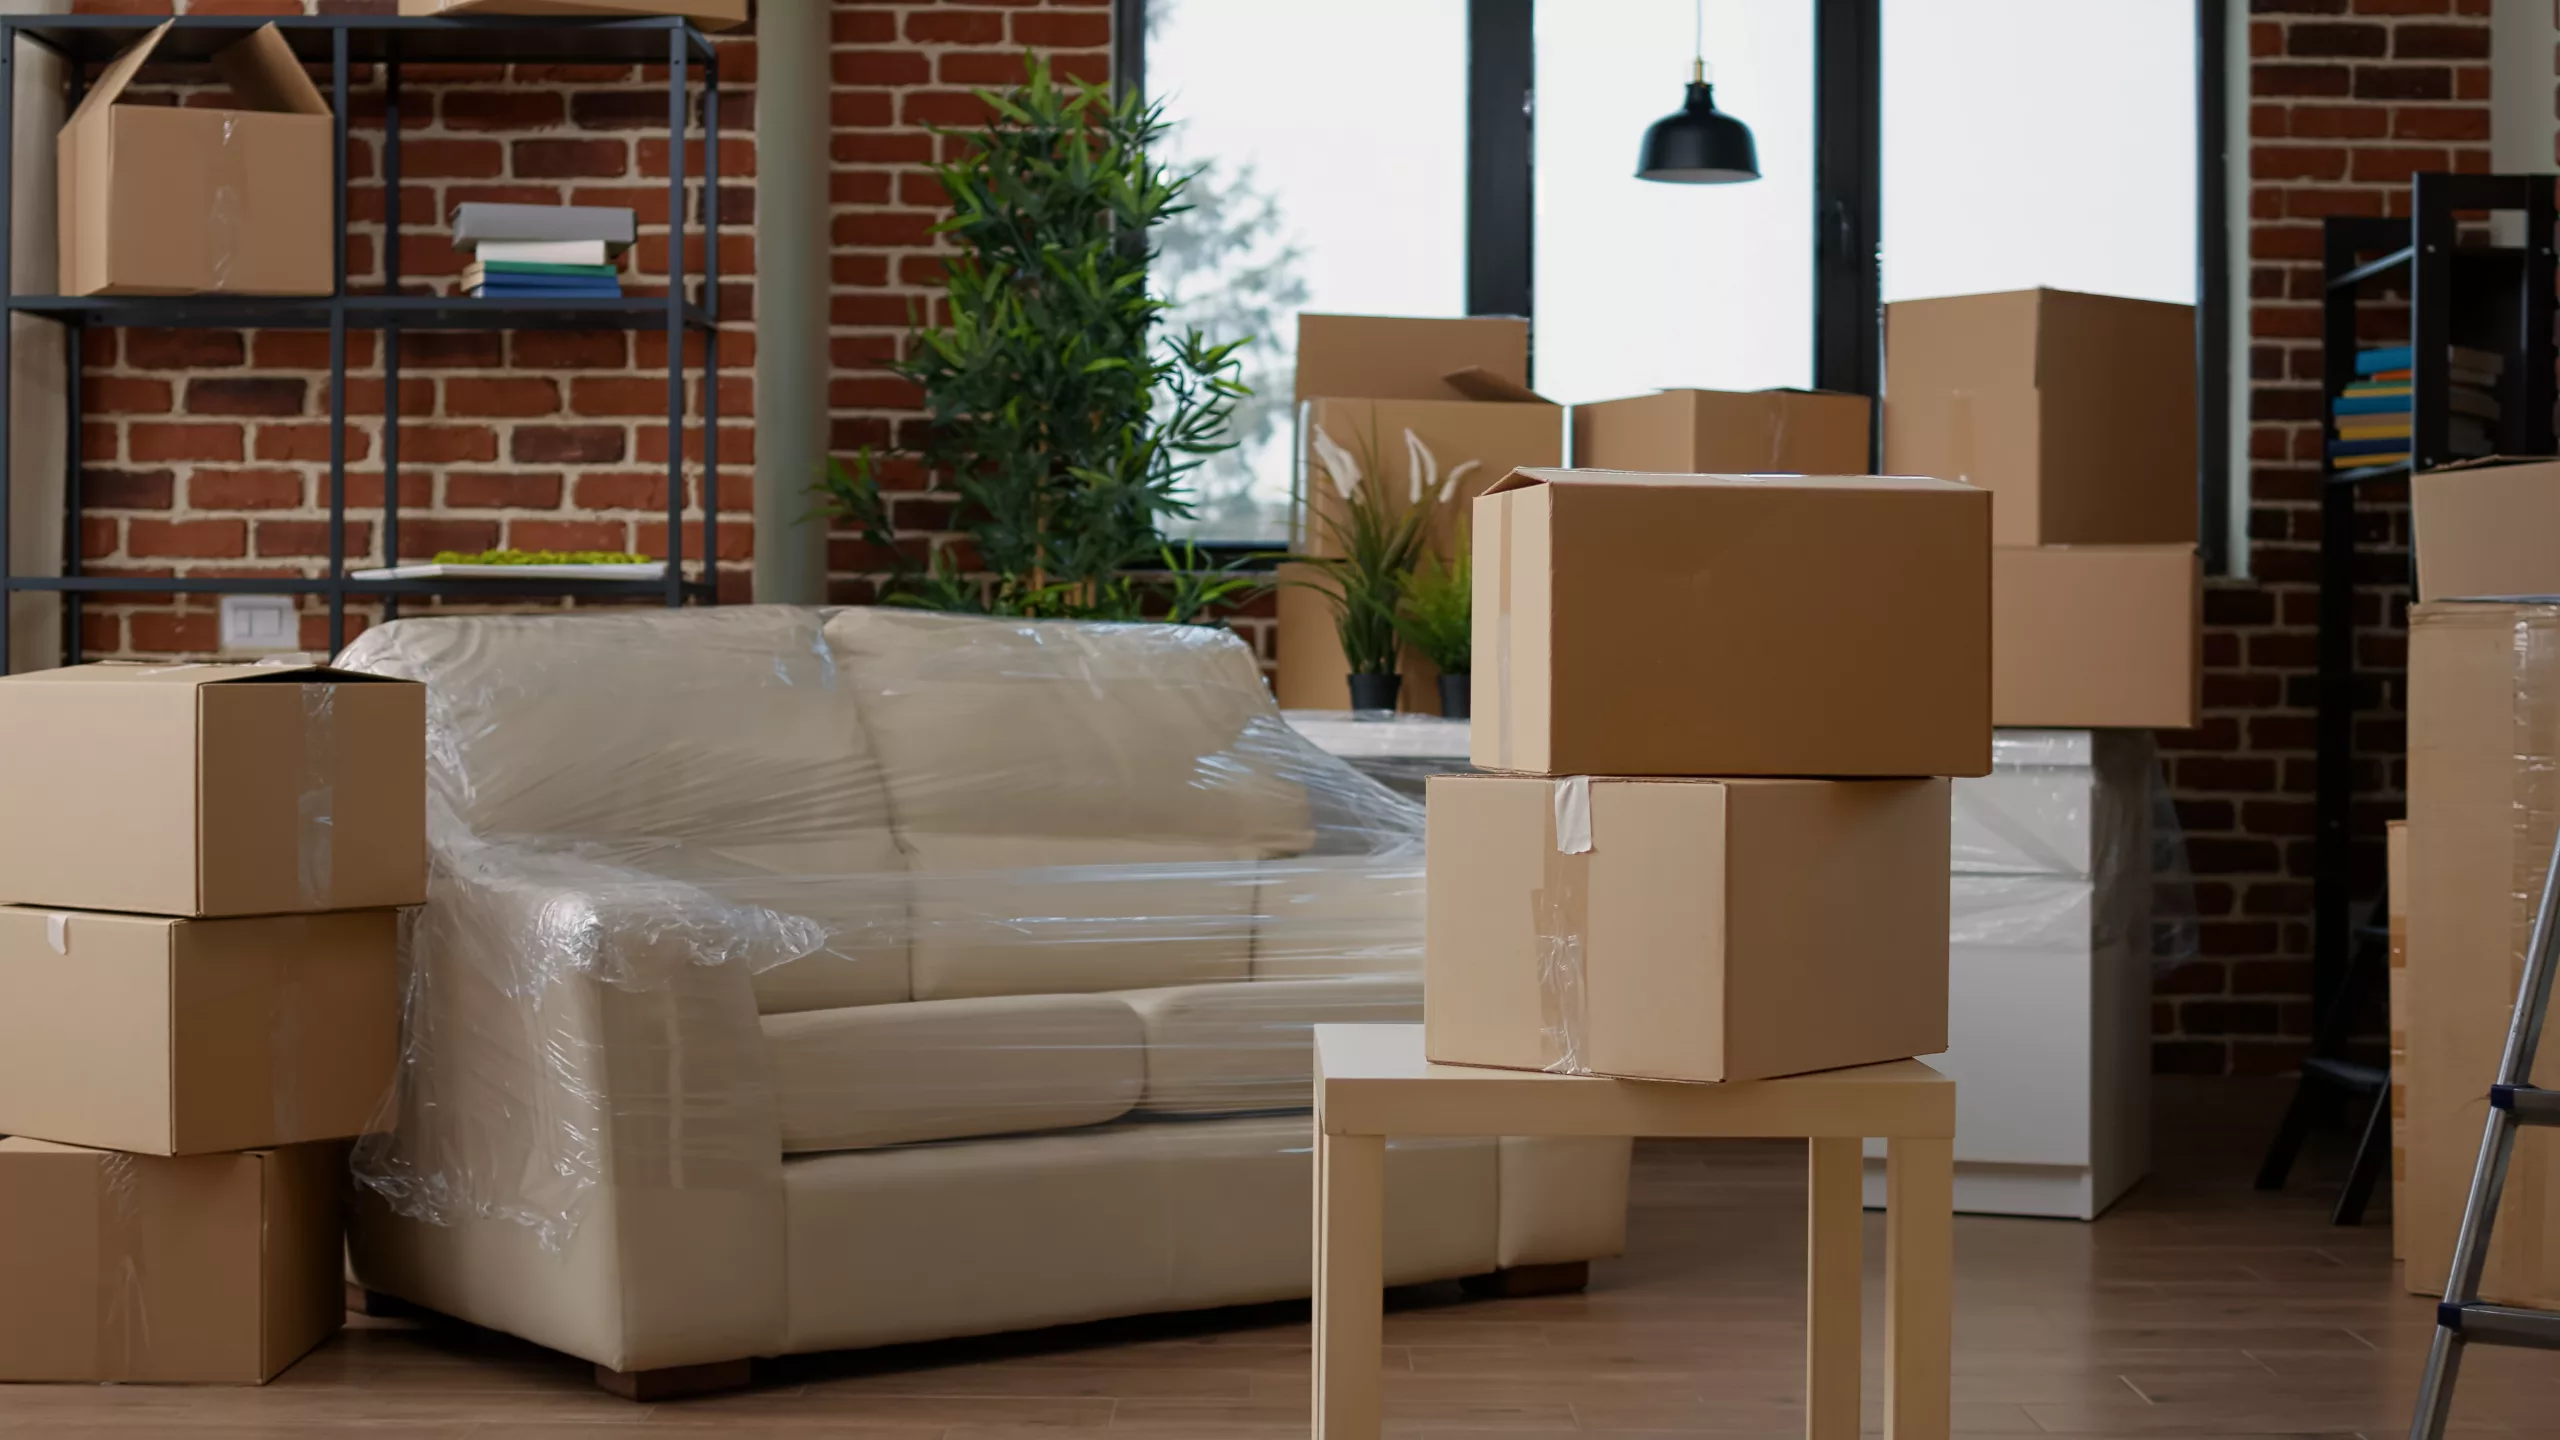 Canapé et cartons emballés pour un déménagement